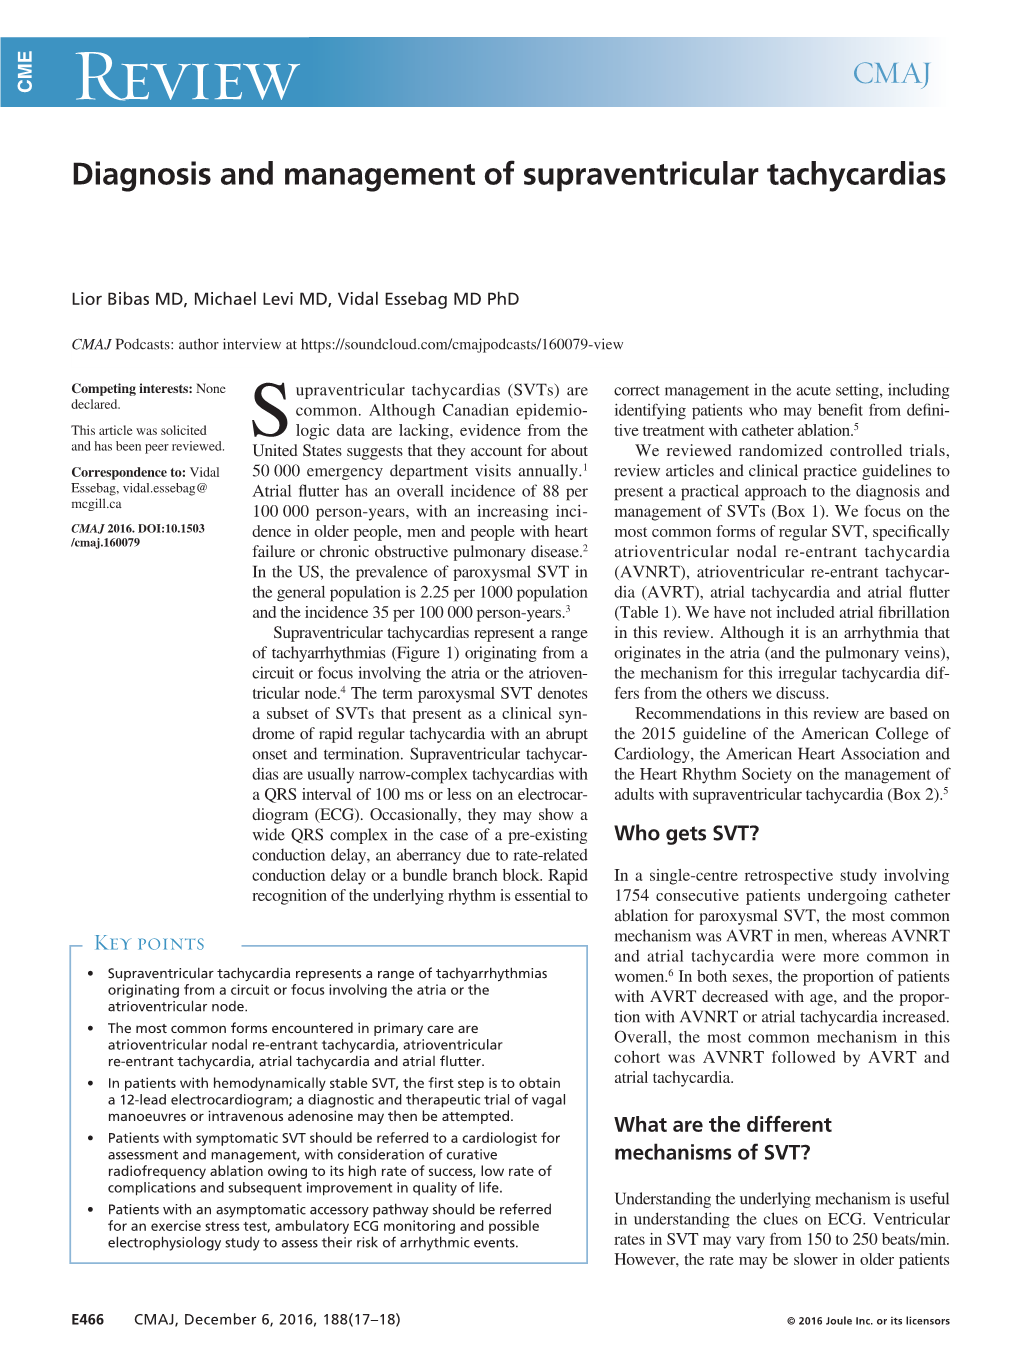 Diagnosis and Management of Supraventricular Tachycardias